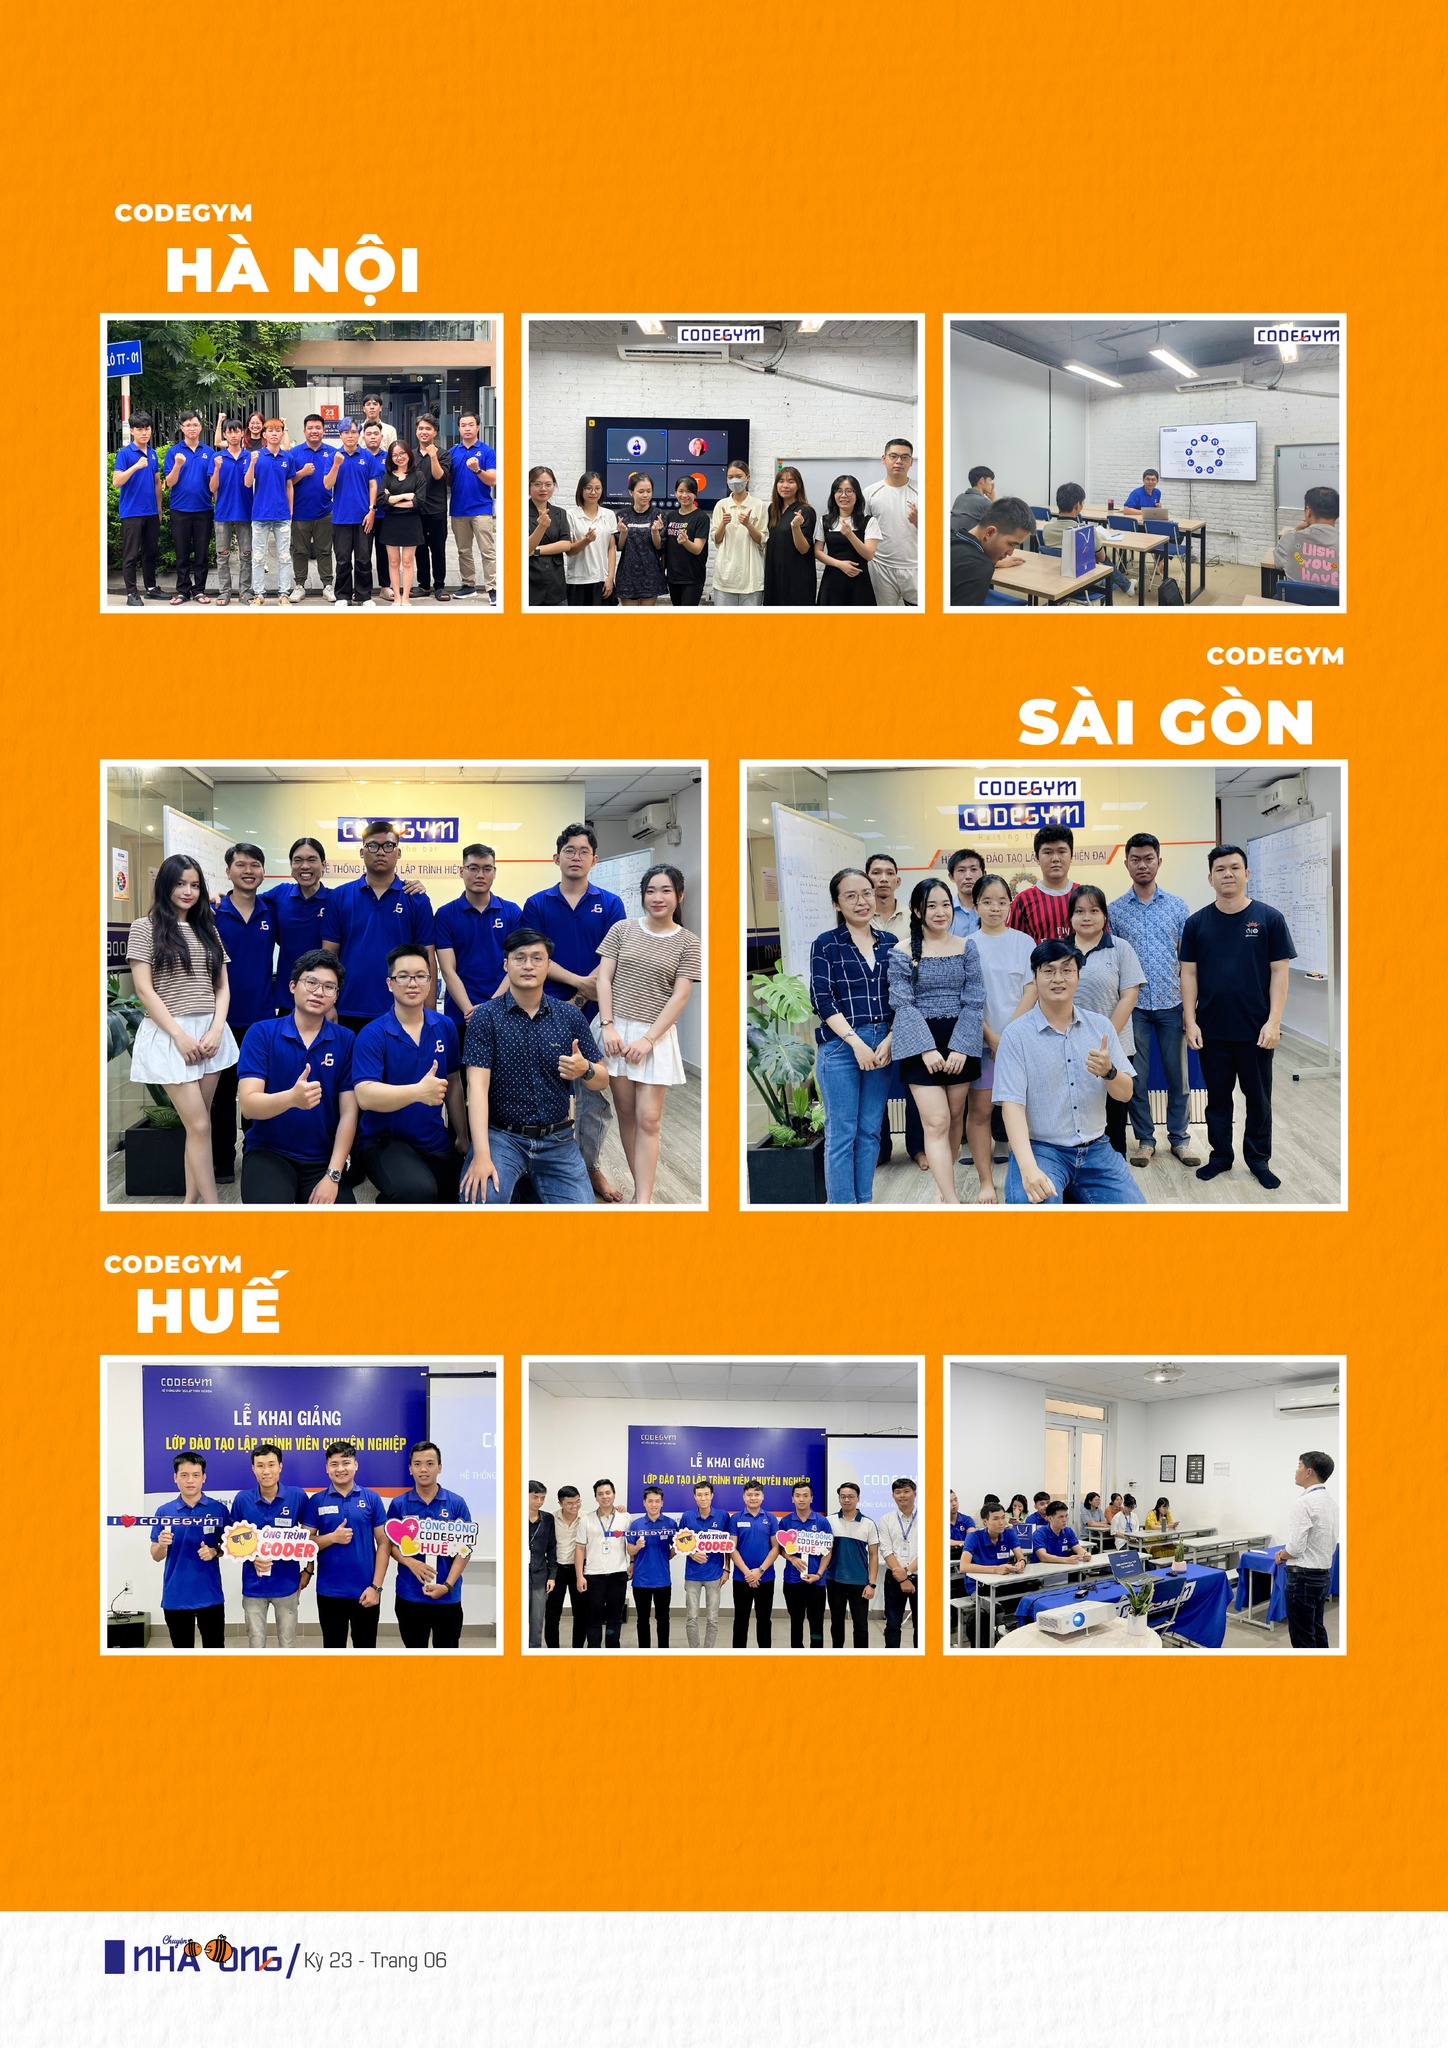 Lễ khai giảng cùng các tân học viên CodeGym tại Hà Nội, Sài Gòn và Huế